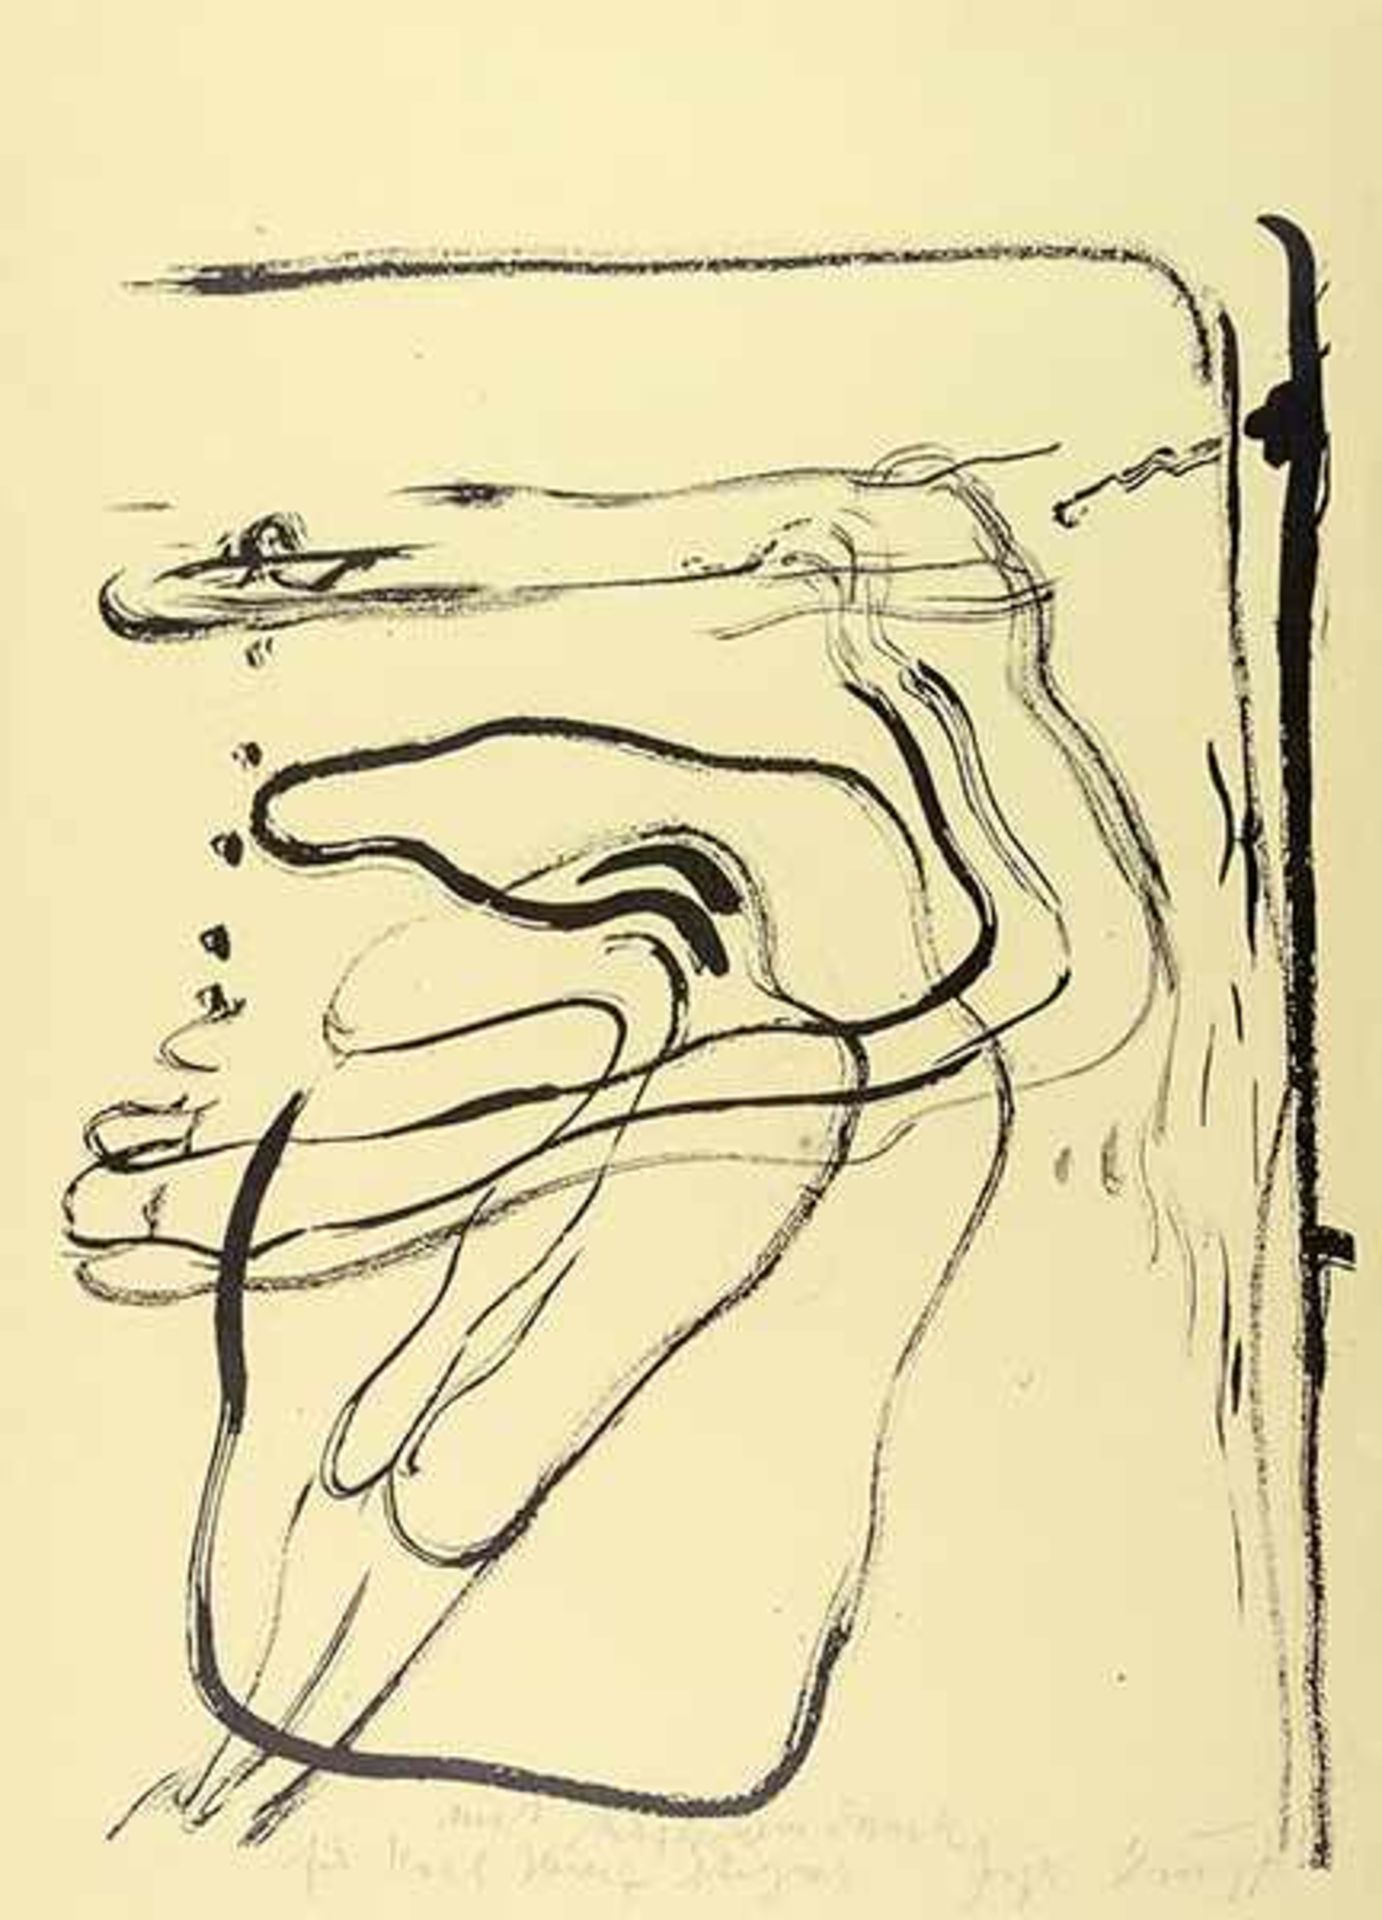 Beuys, Joseph. Schwimmer unter Wasser. Blatt aus "Spur I". Lithographie auf gelblichem Bütten. Links